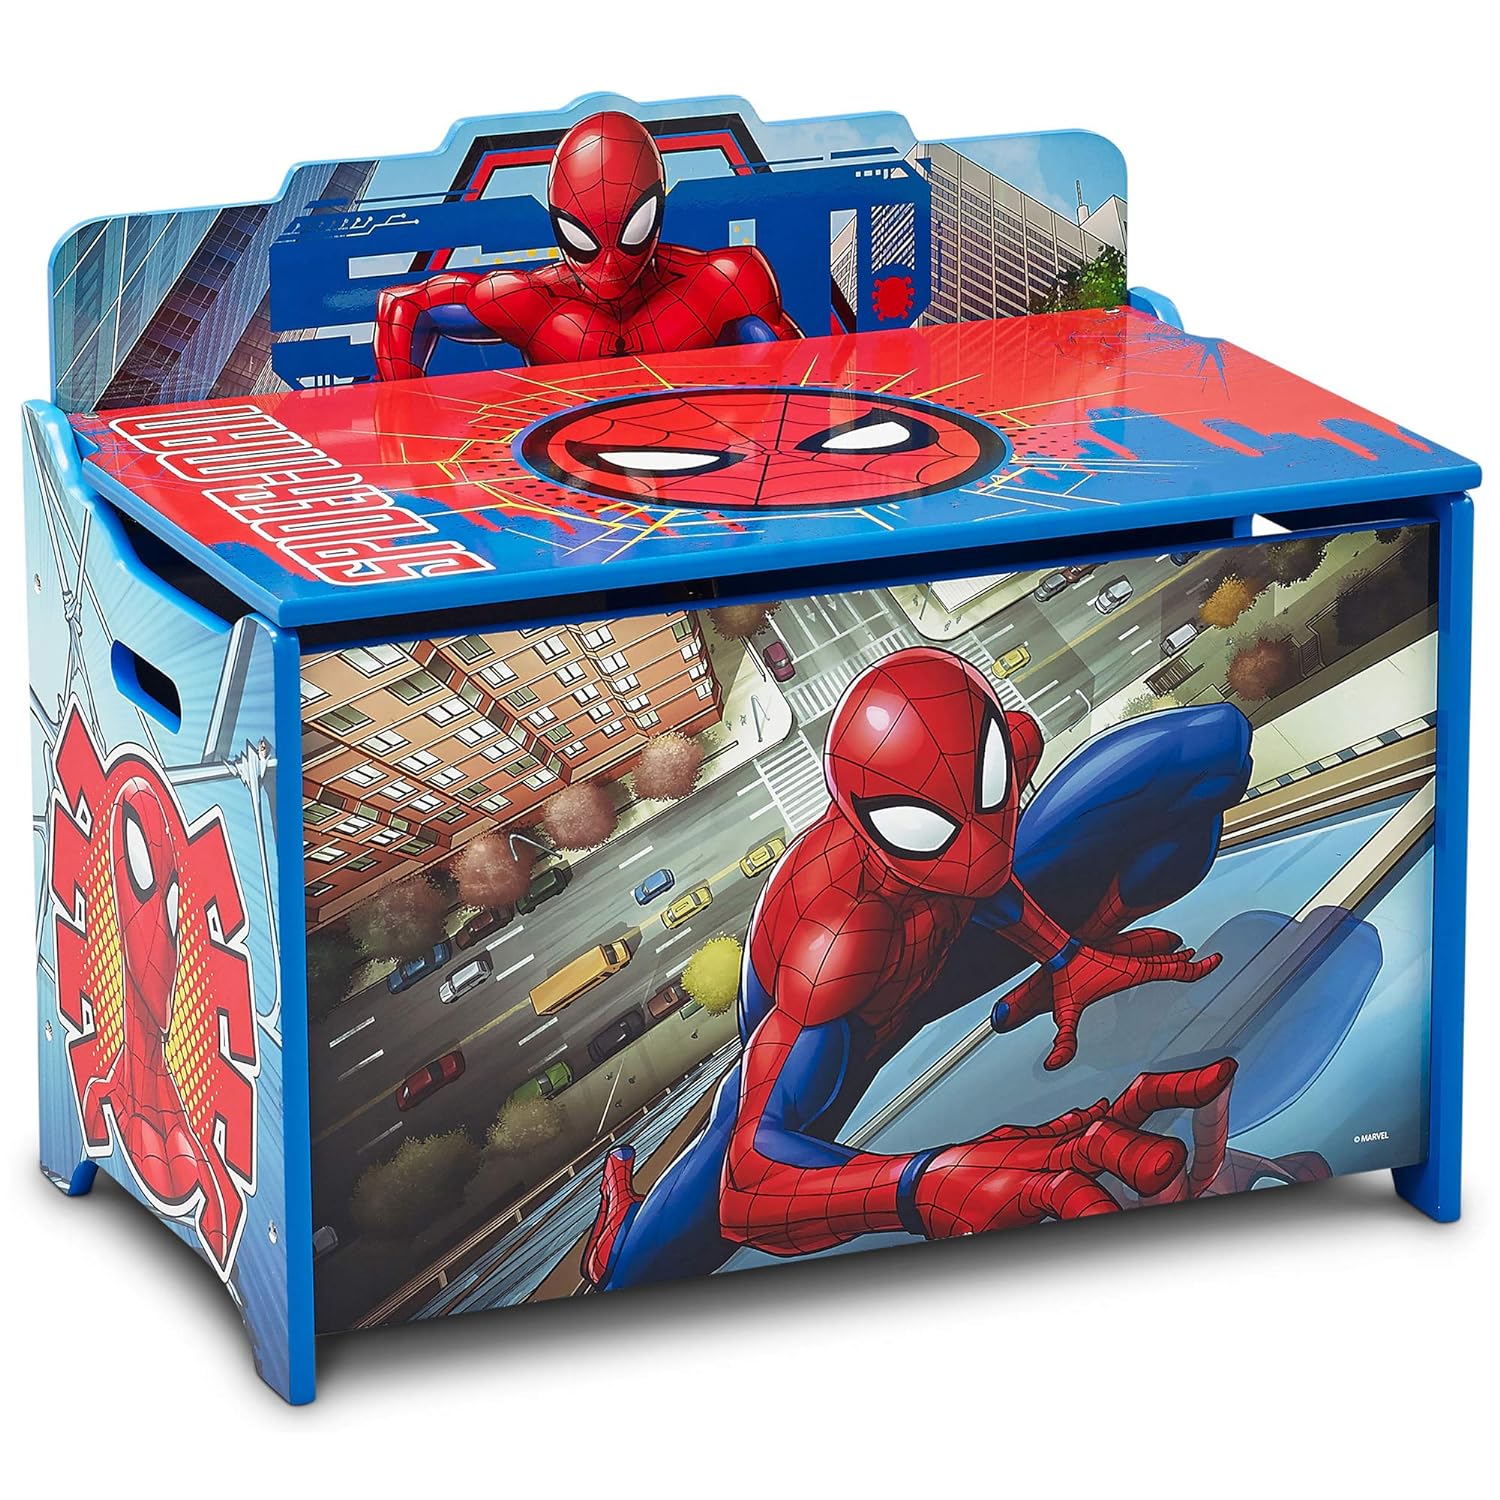 Delta Children Deluxe Toy Box